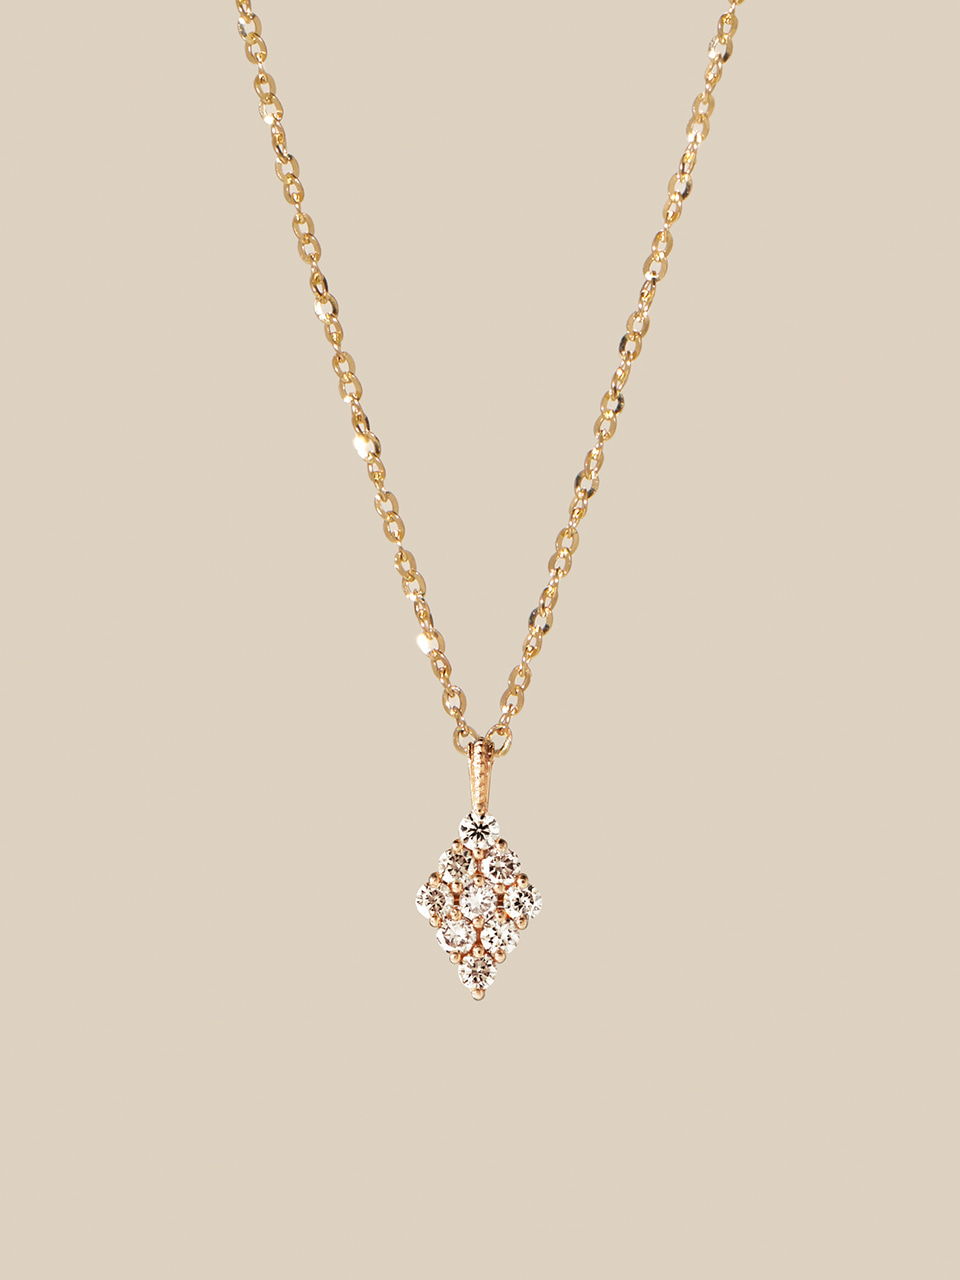 Datona Diamond Necklace